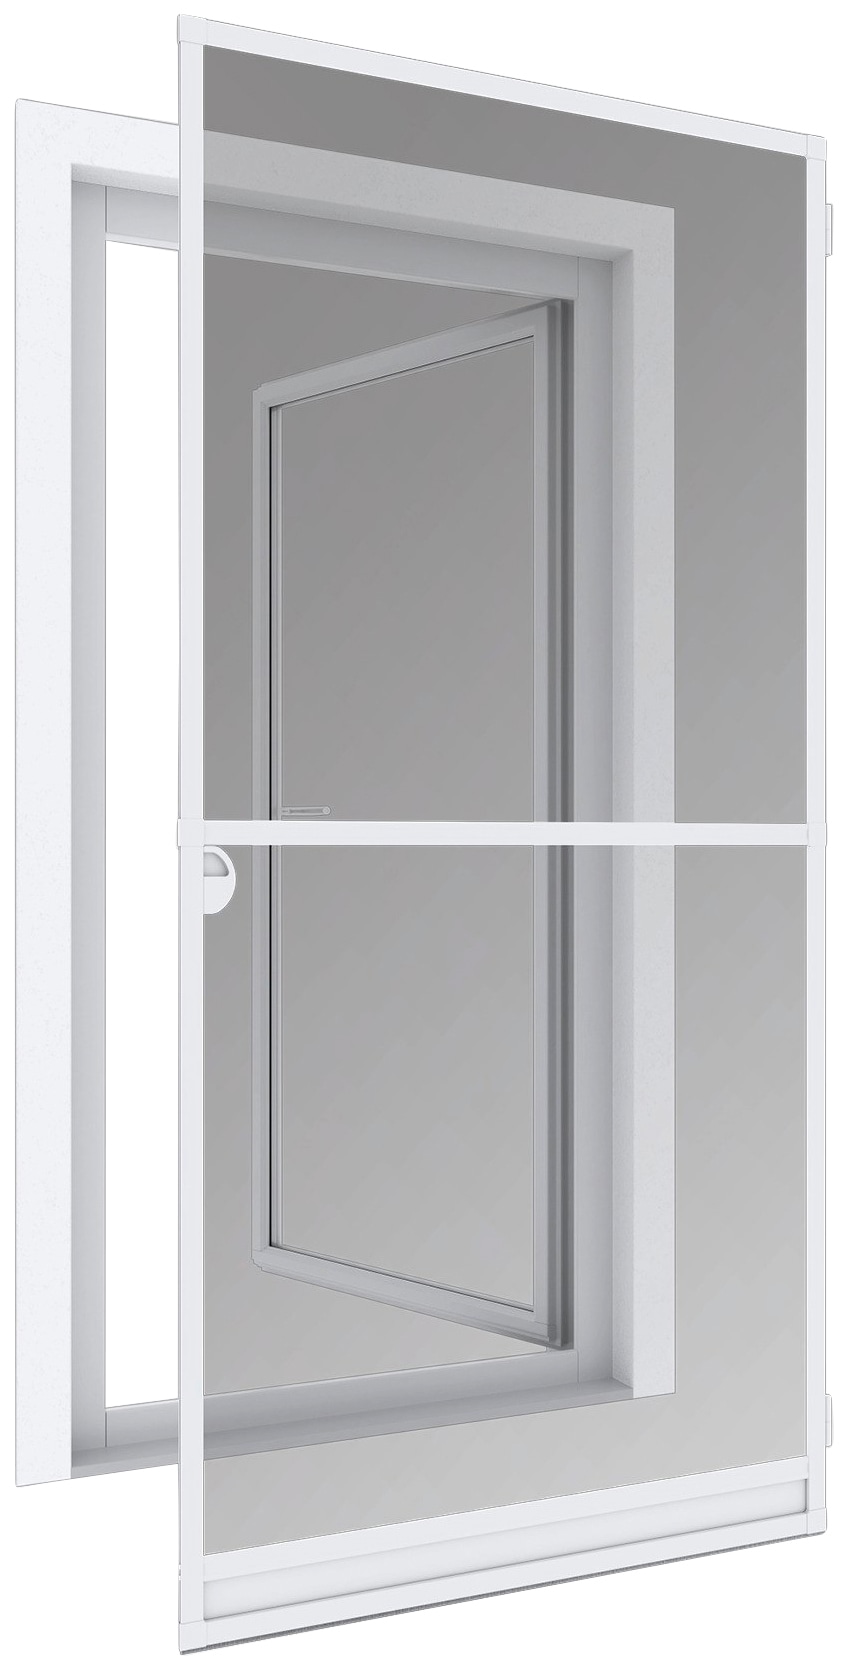 Windhager Insektenschutz-Tür »EXPERT Rahmen Drehtür«, BxH: 120x240 cm